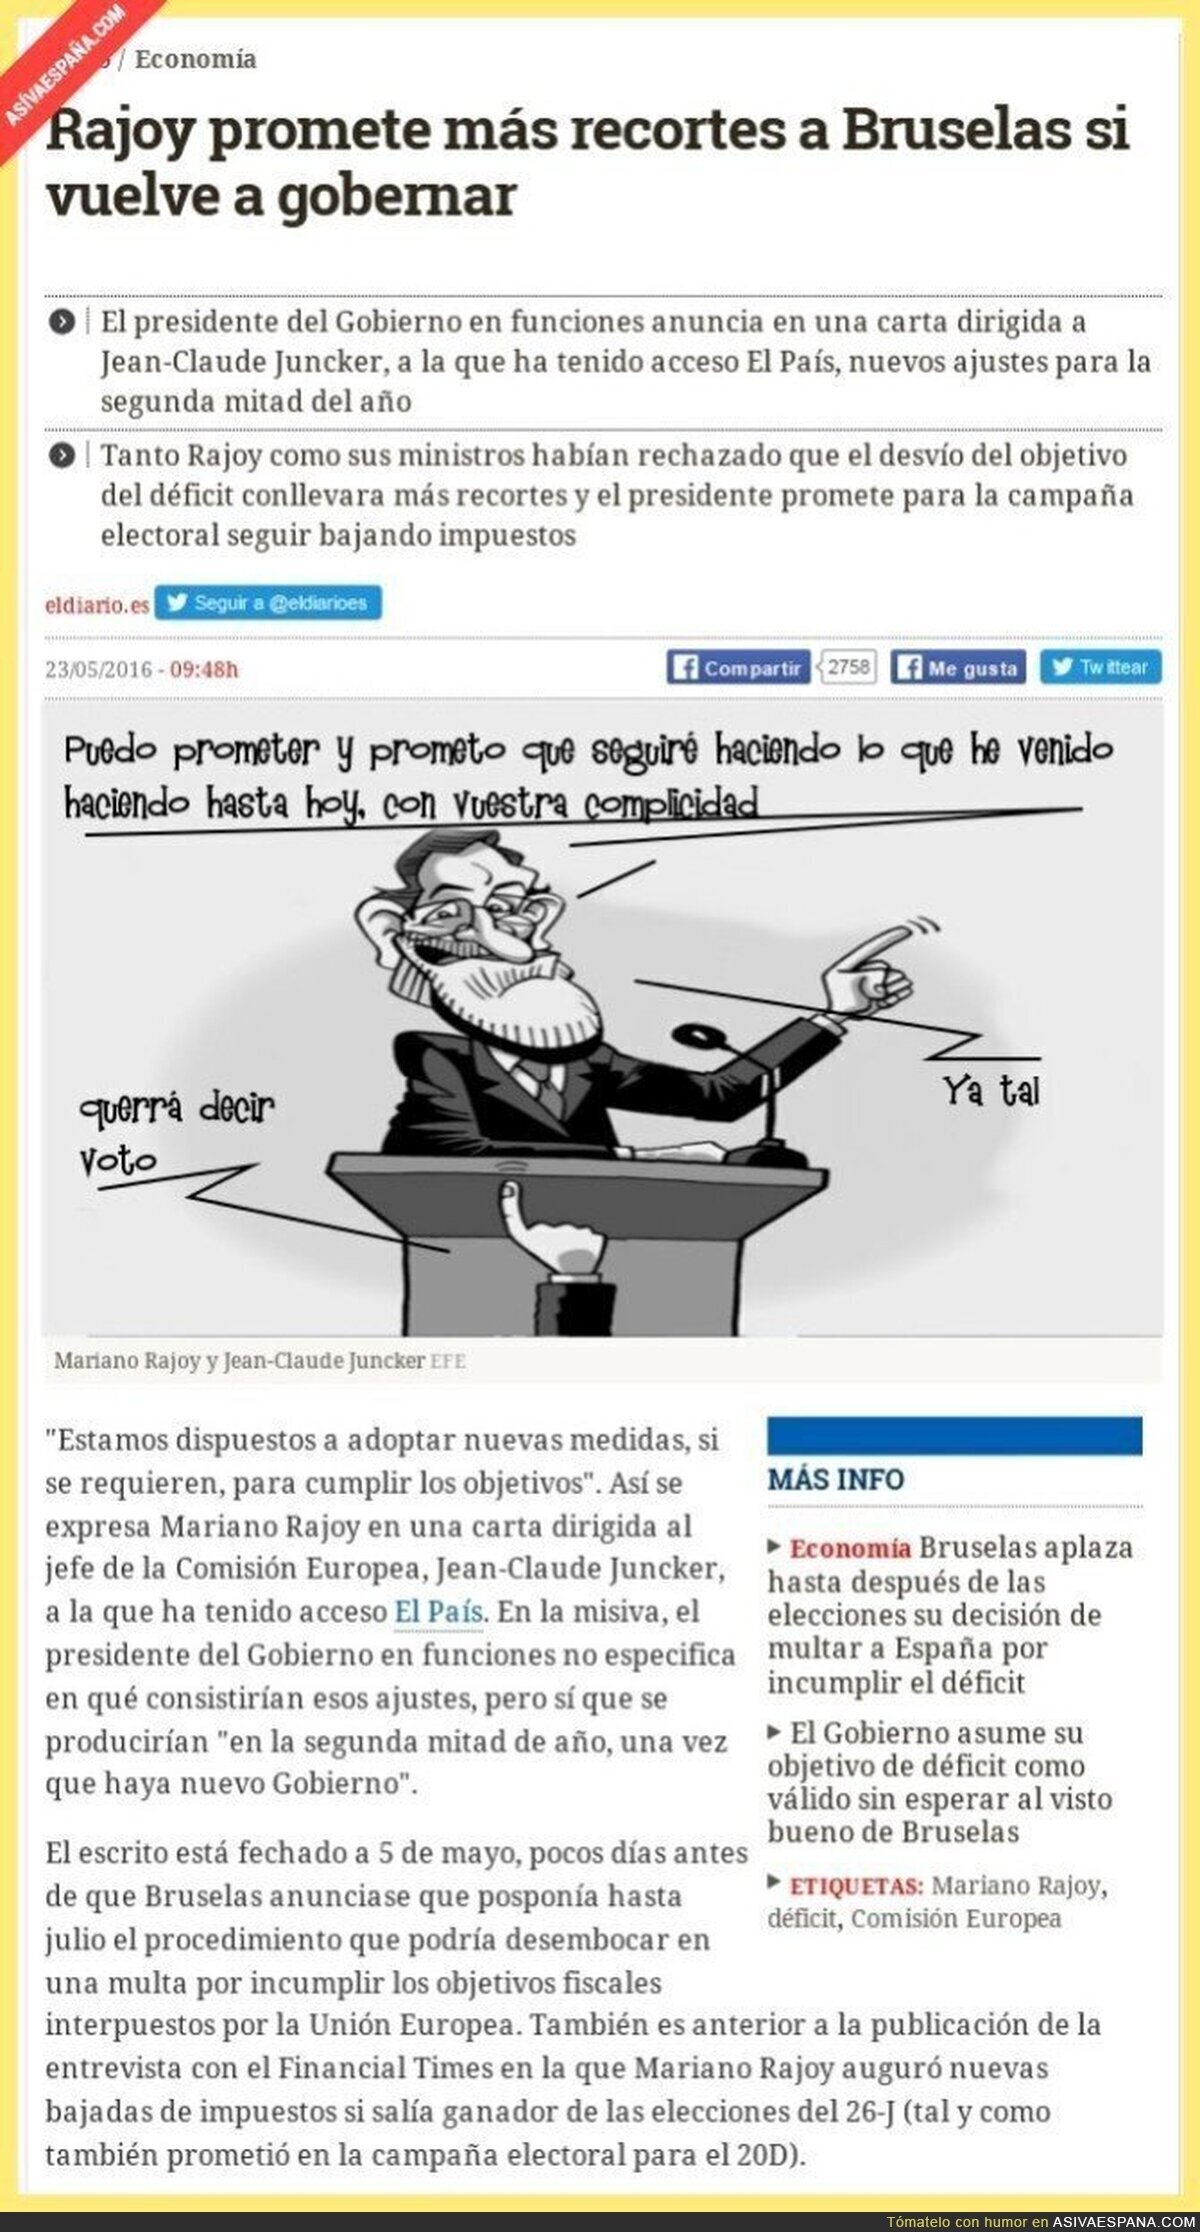 Rajoy al descubierto, pero le siguen votando